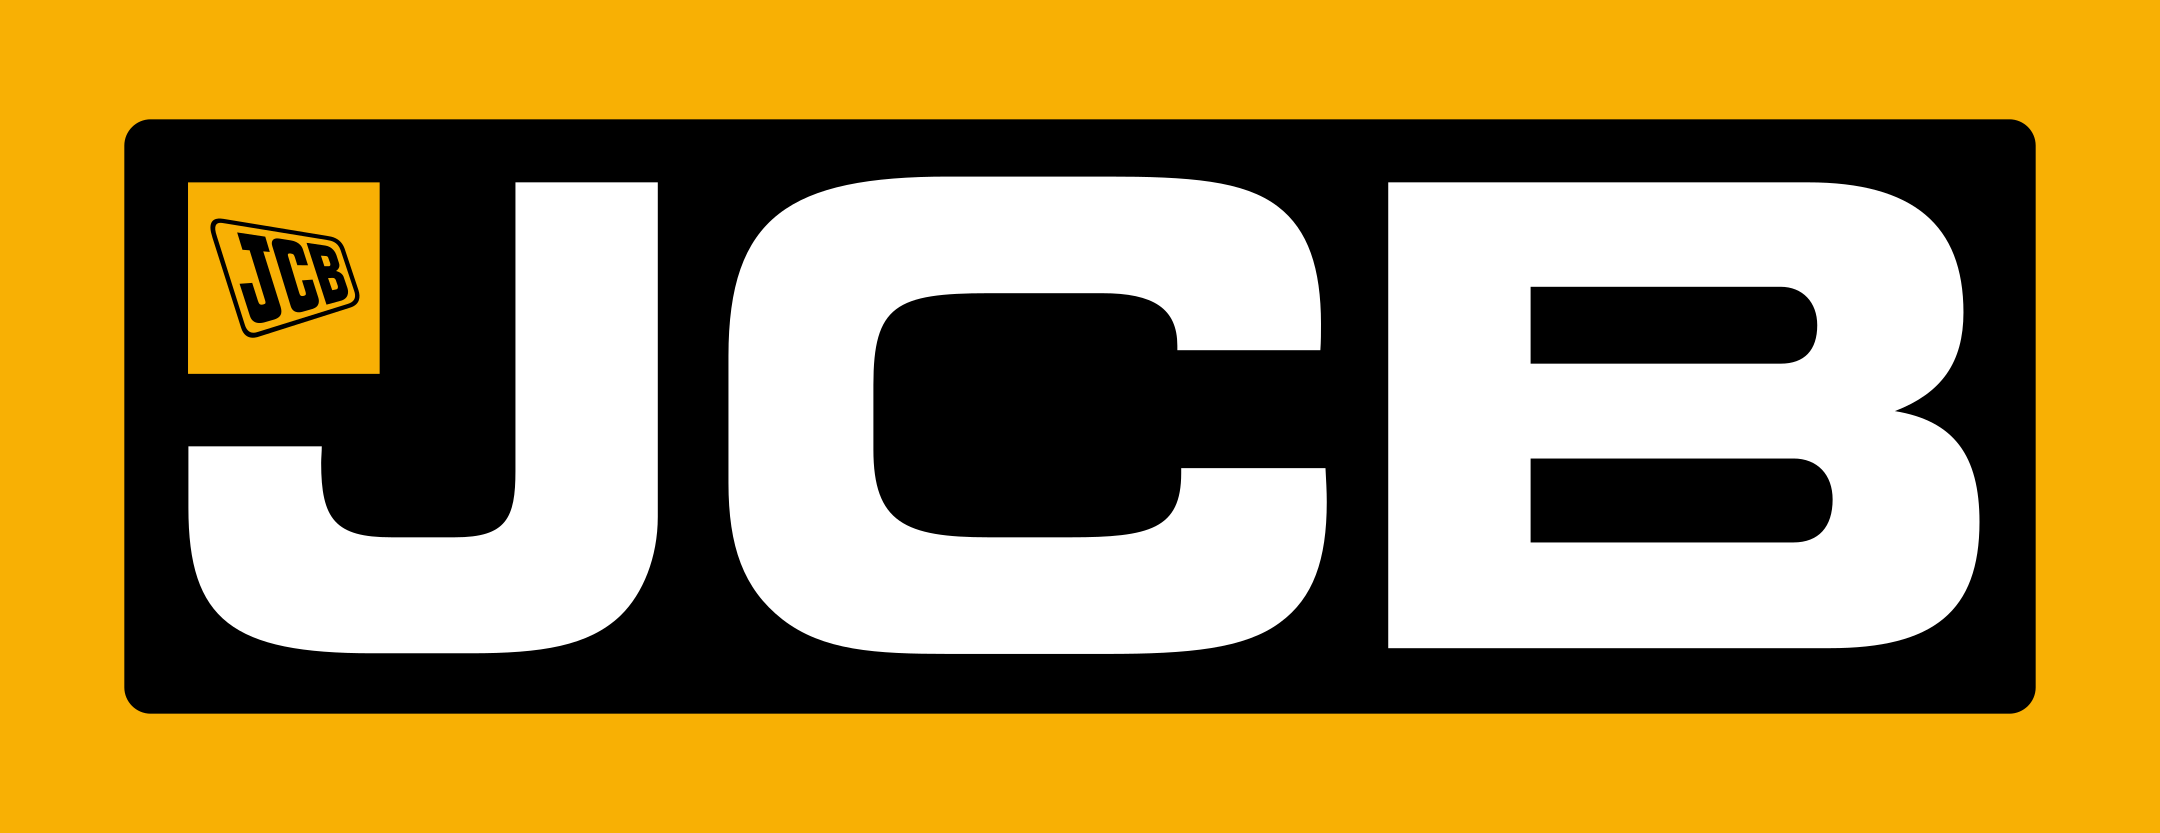 jcb logo 1 - JCB Logo